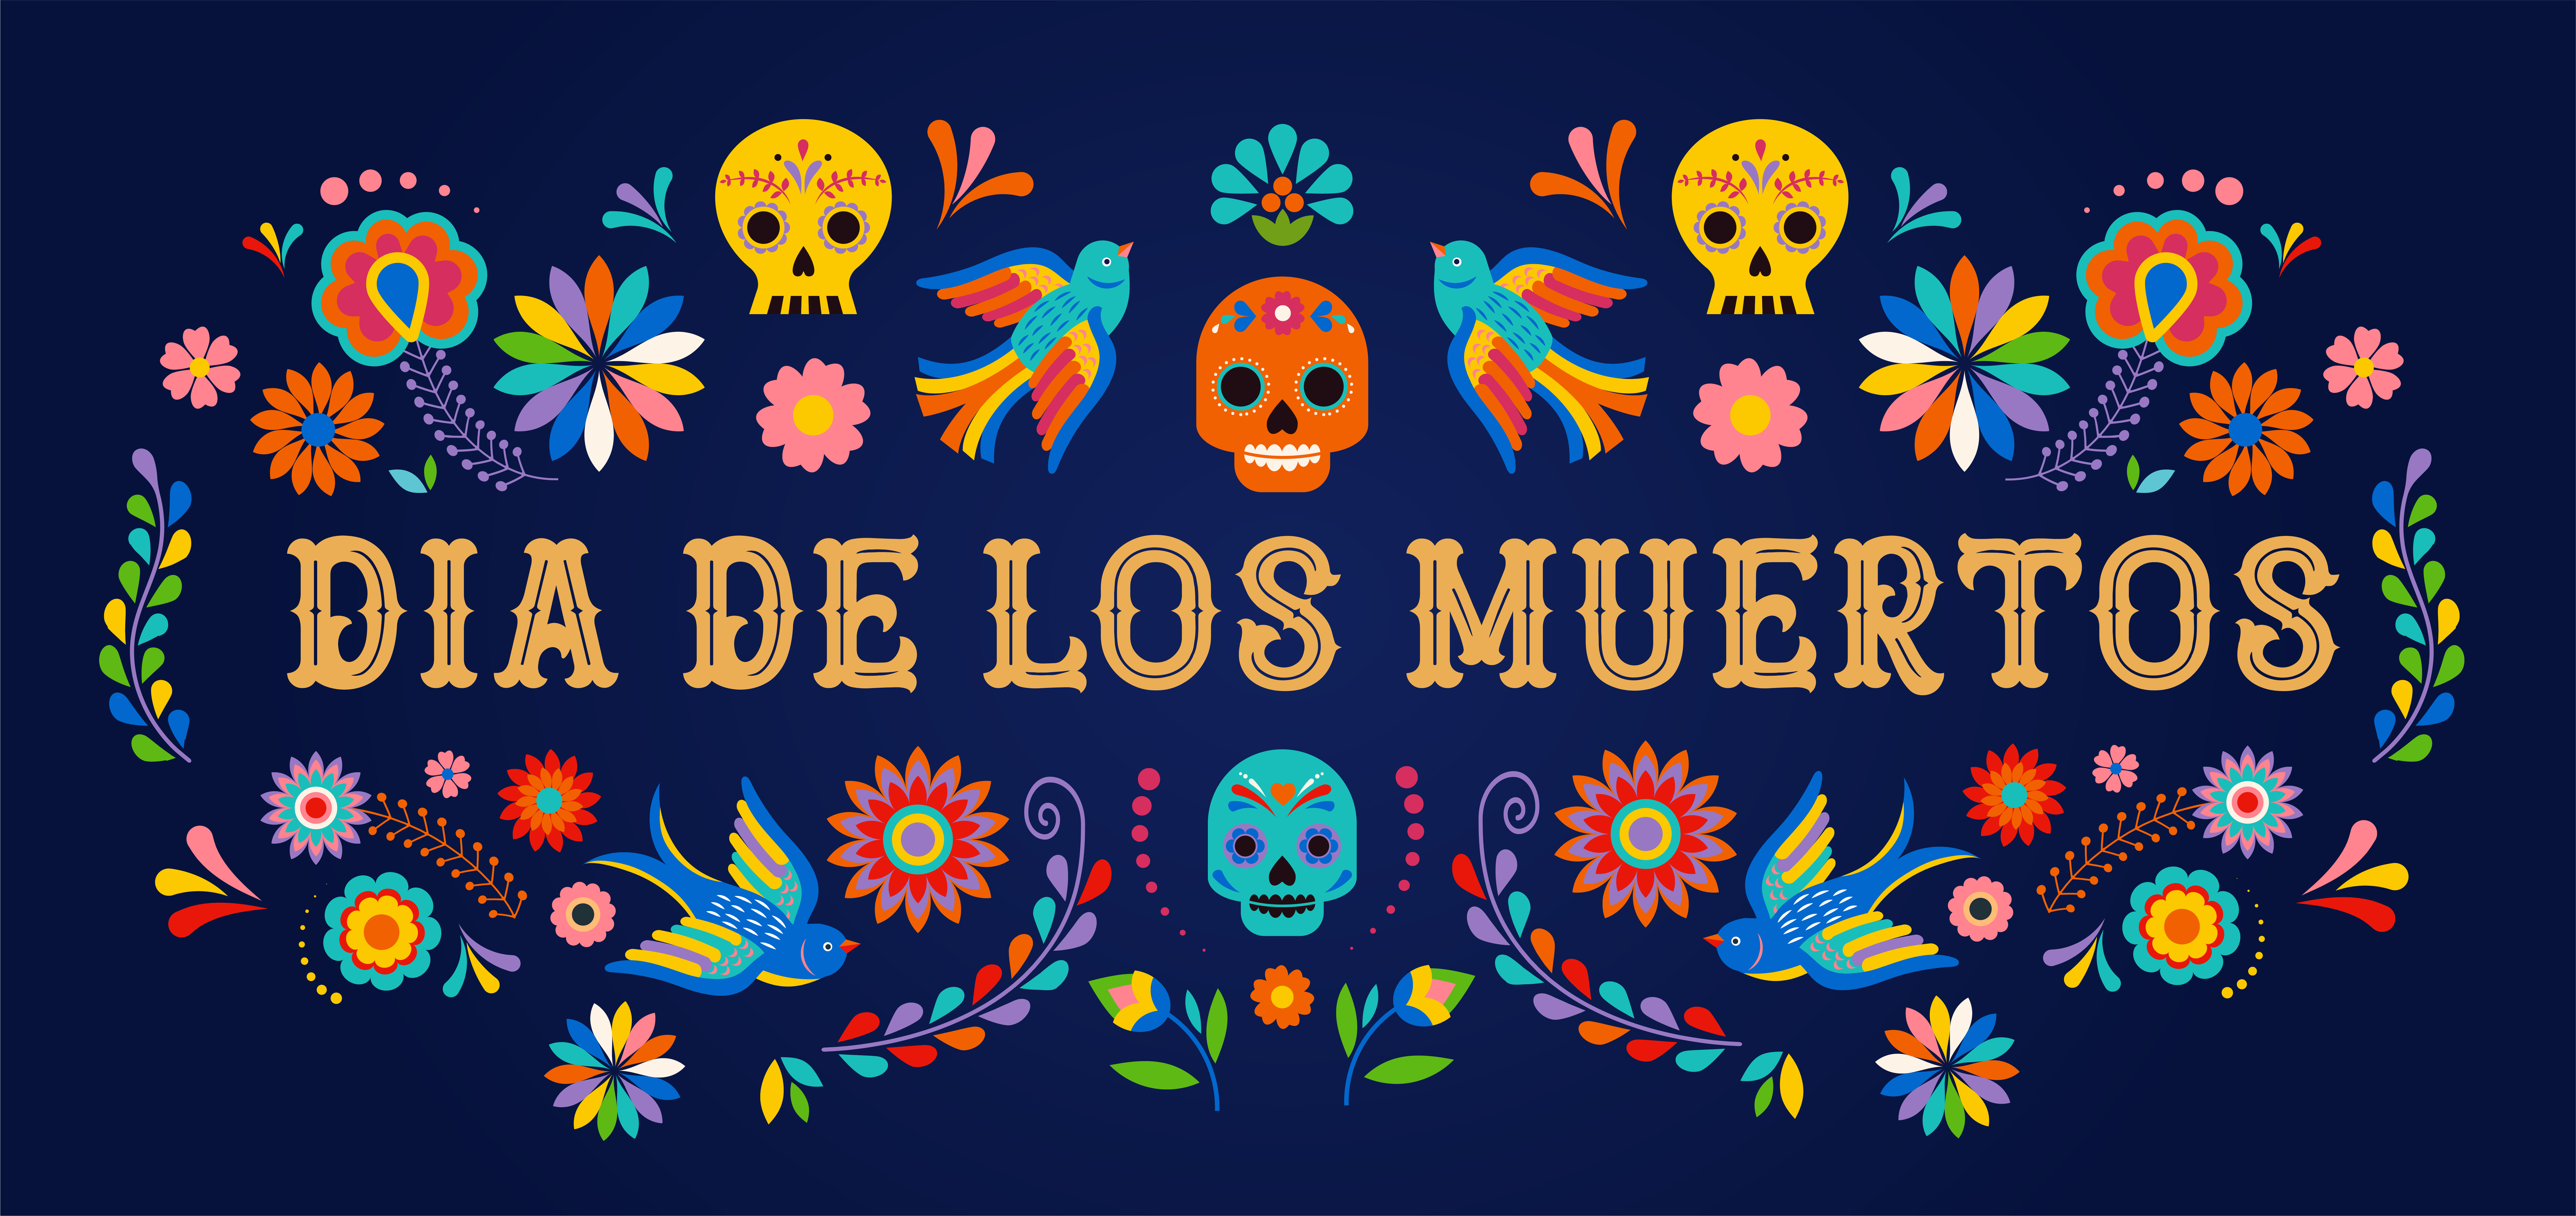 The Dia de Los Muertos